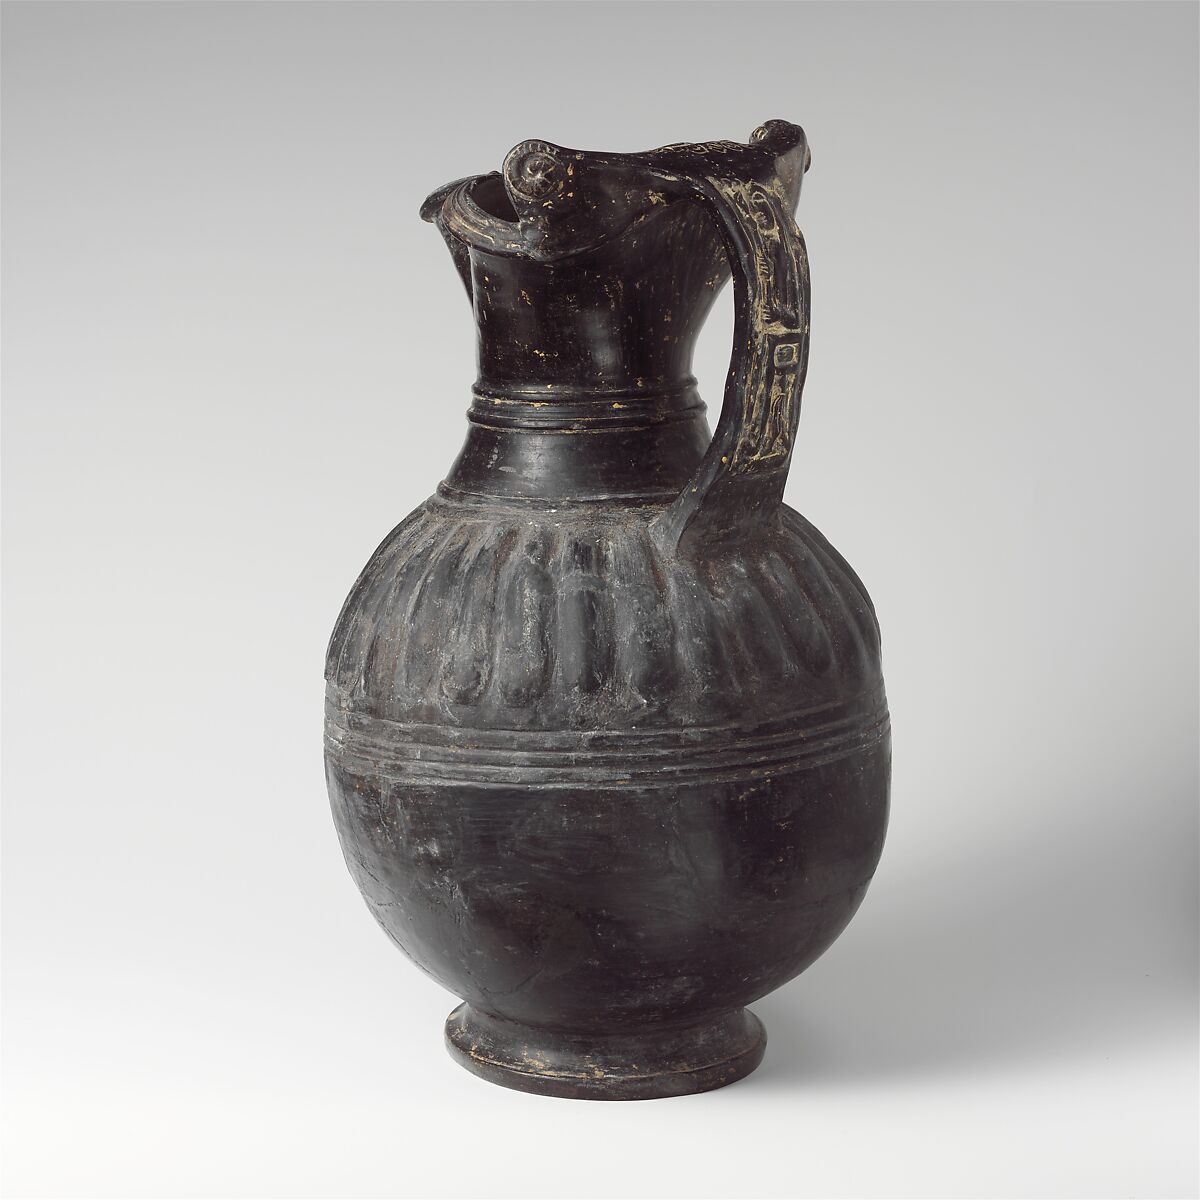 Terracotta trefoil oinochoe (jug), Terracotta, Etruscan 